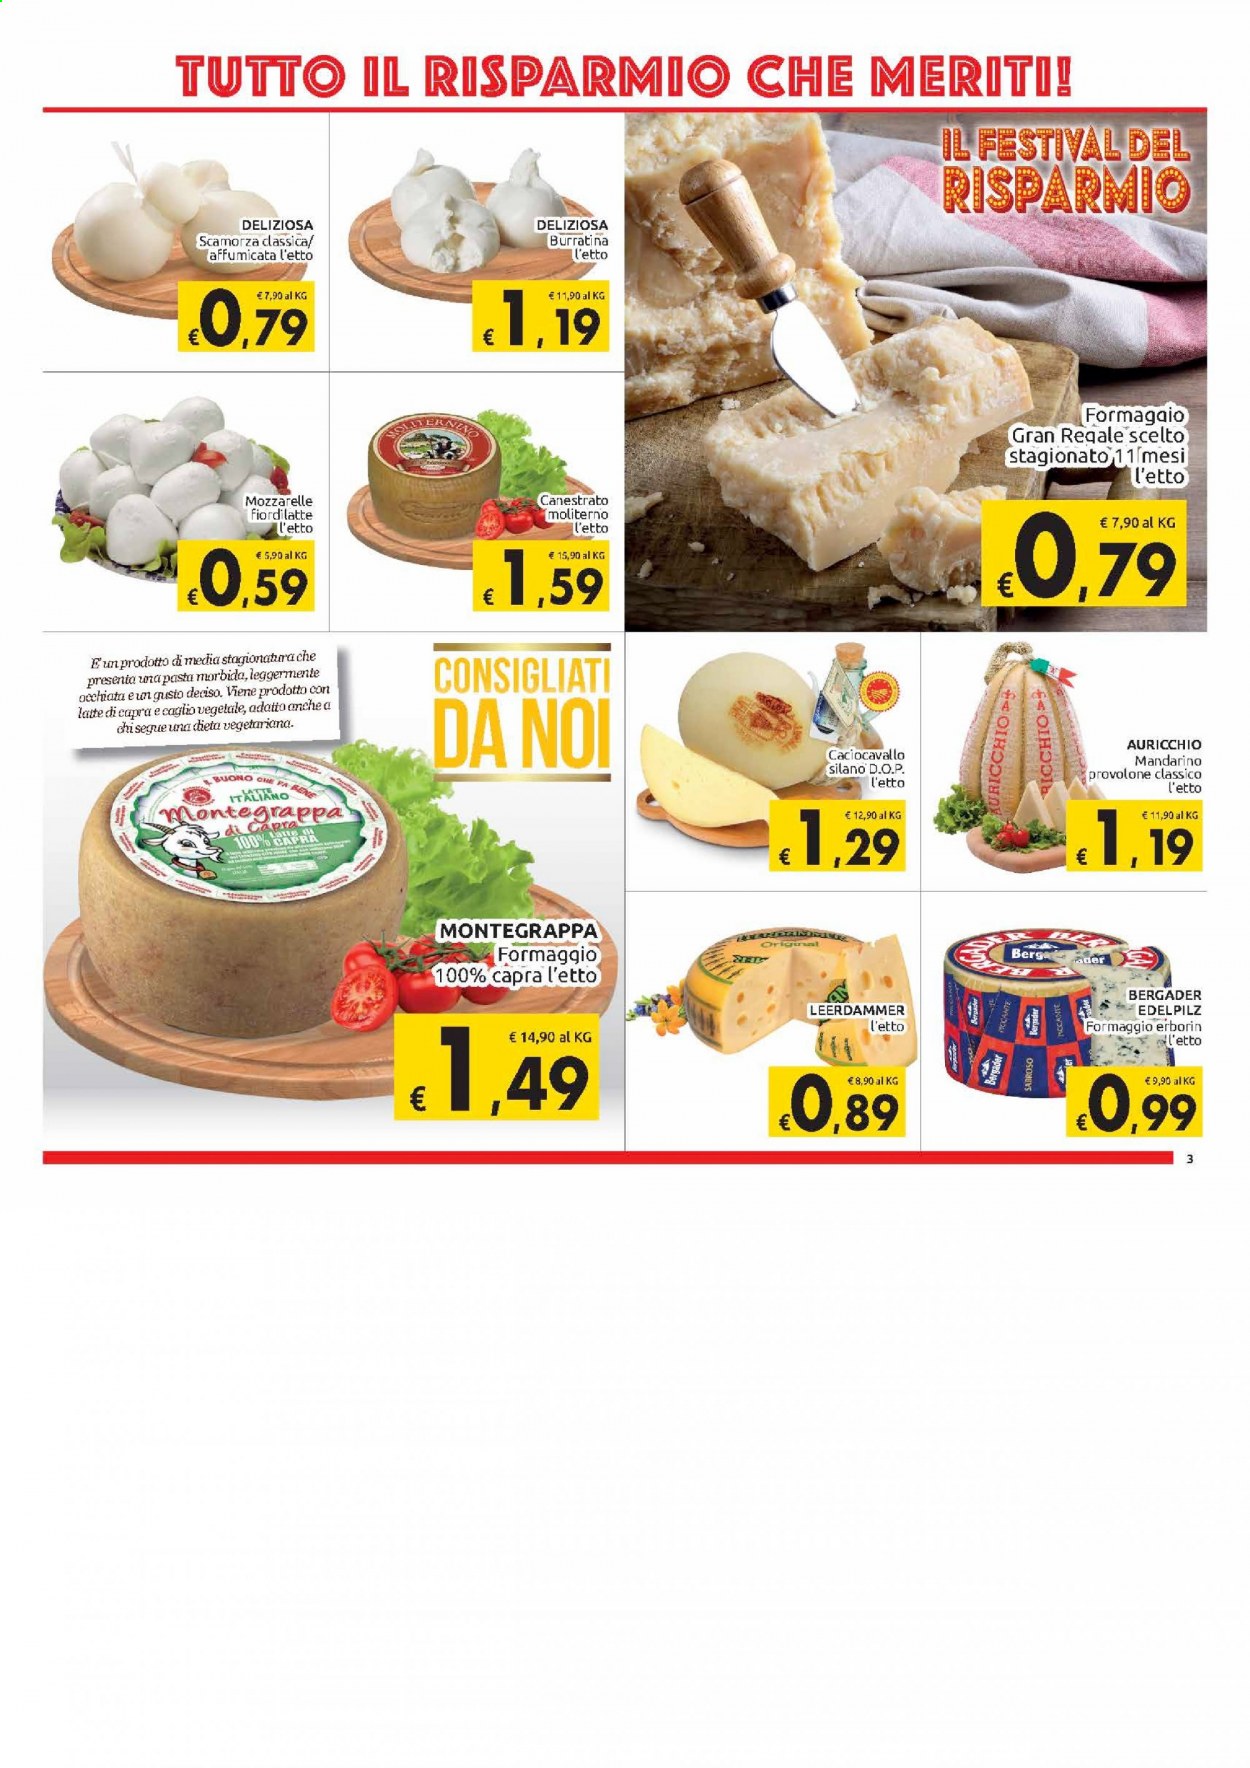 Volantino Carrefour - 2/3/2021 - 13/3/2021 - Prodotti in offerta - formaggio, Leerdammer, caciocavallo, canestrato, provolone, scamorza, latte, pasta. Pagina 3.